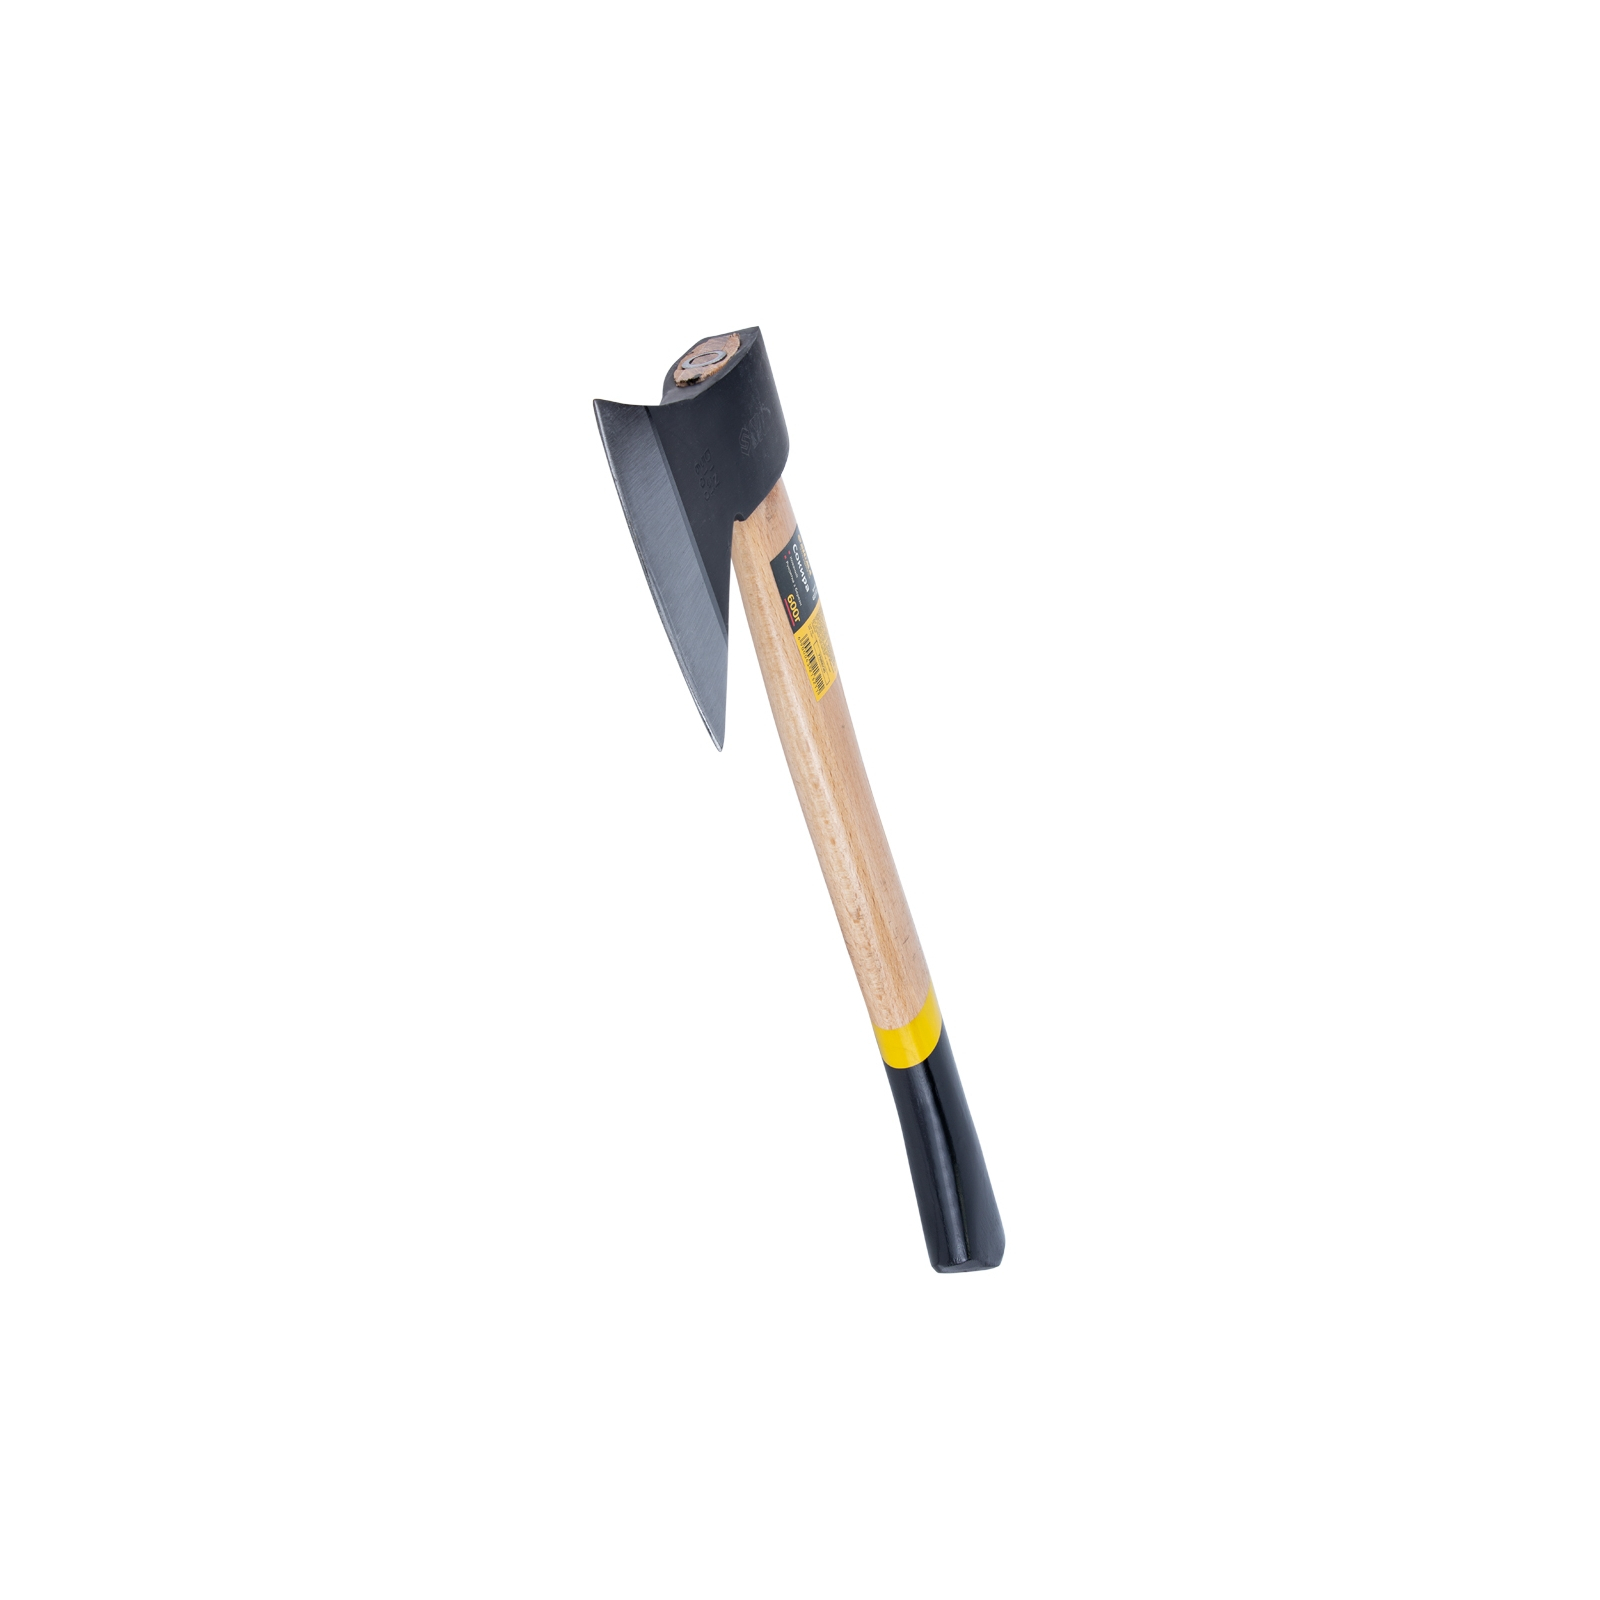 Сокира Sigma 600г дерев'яна ручка (береза) (4321321) зображення 4